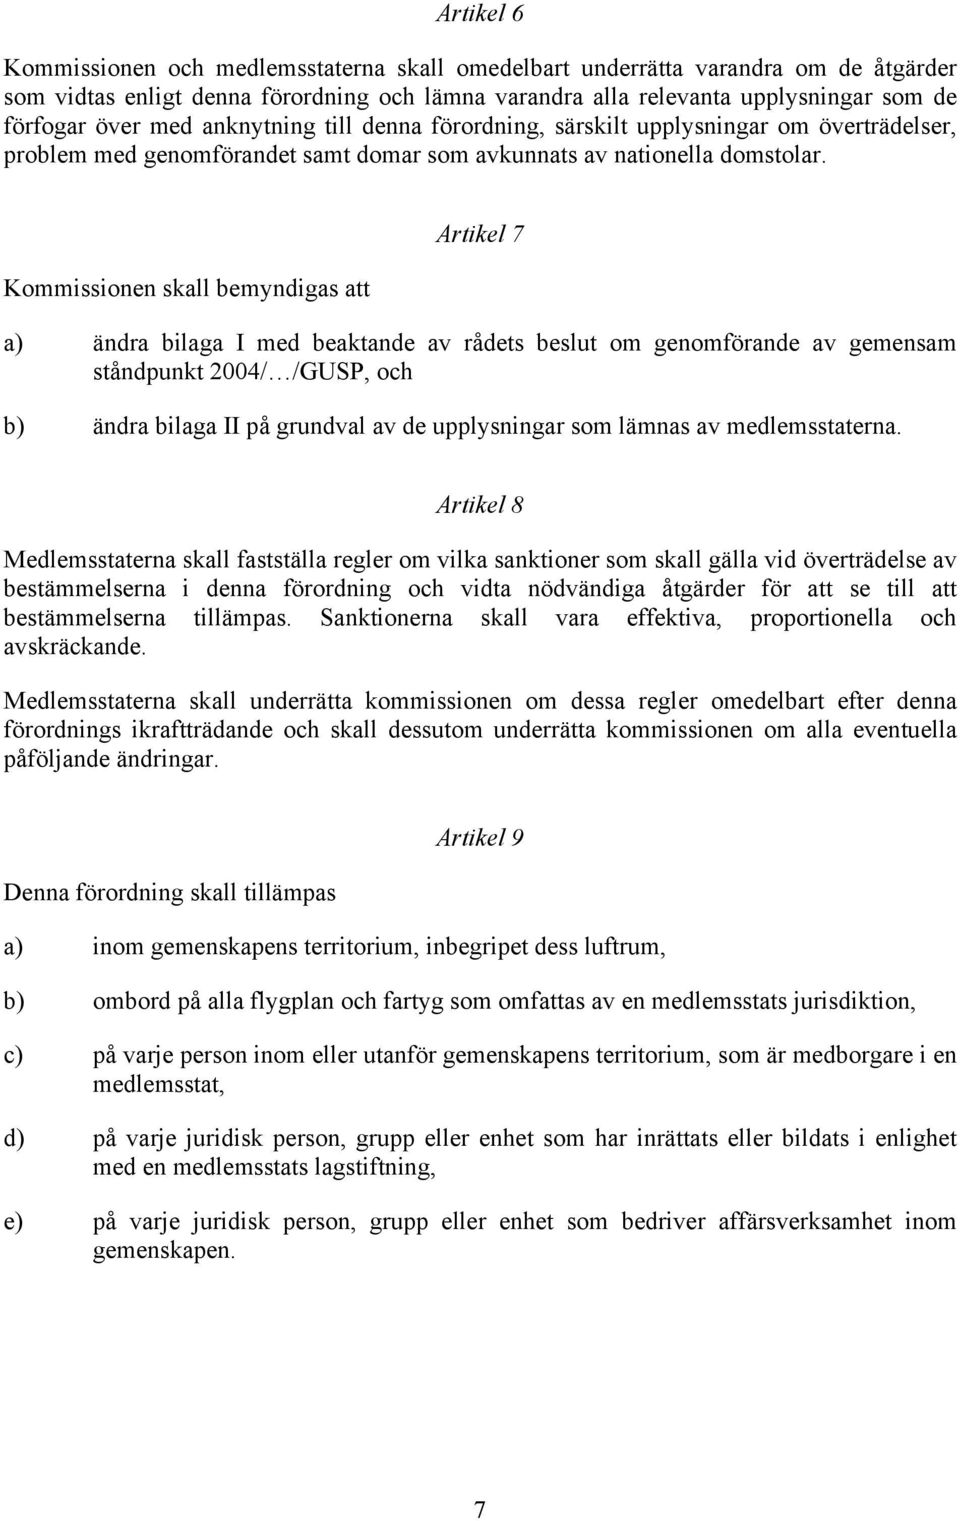 Kommissionen skall bemyndigas att Artikel 7 a) ändra bilaga I med beaktande av rådets beslut om genomförande av gemensam ståndpunkt 2004/ /GUSP, och b) ändra bilaga II på grundval av de upplysningar